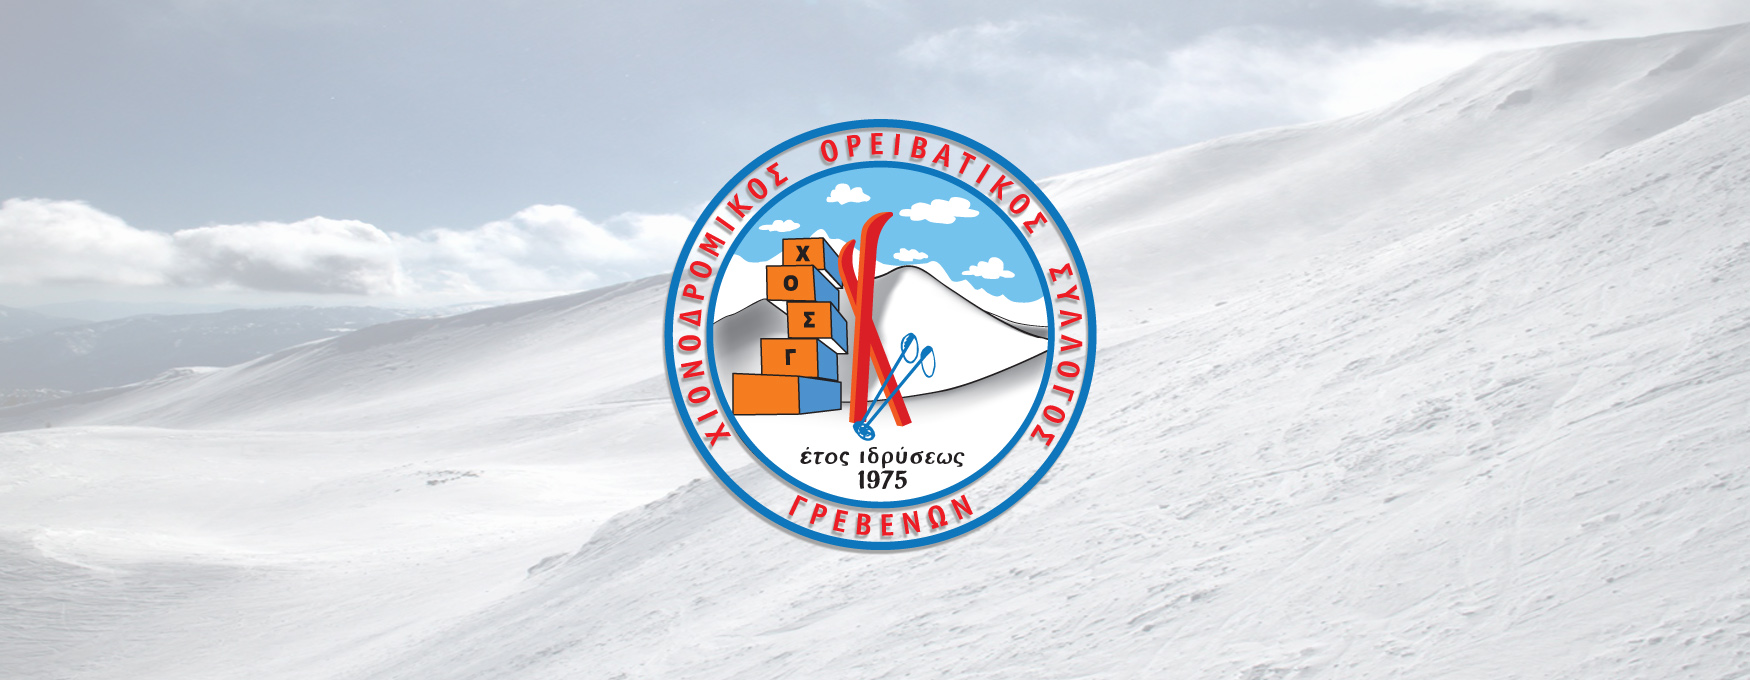 Αποτελέσματα αρχαιρεσιών του Χιονοδρομικού Ορειβατικού Συλλόγου Γρεβενών